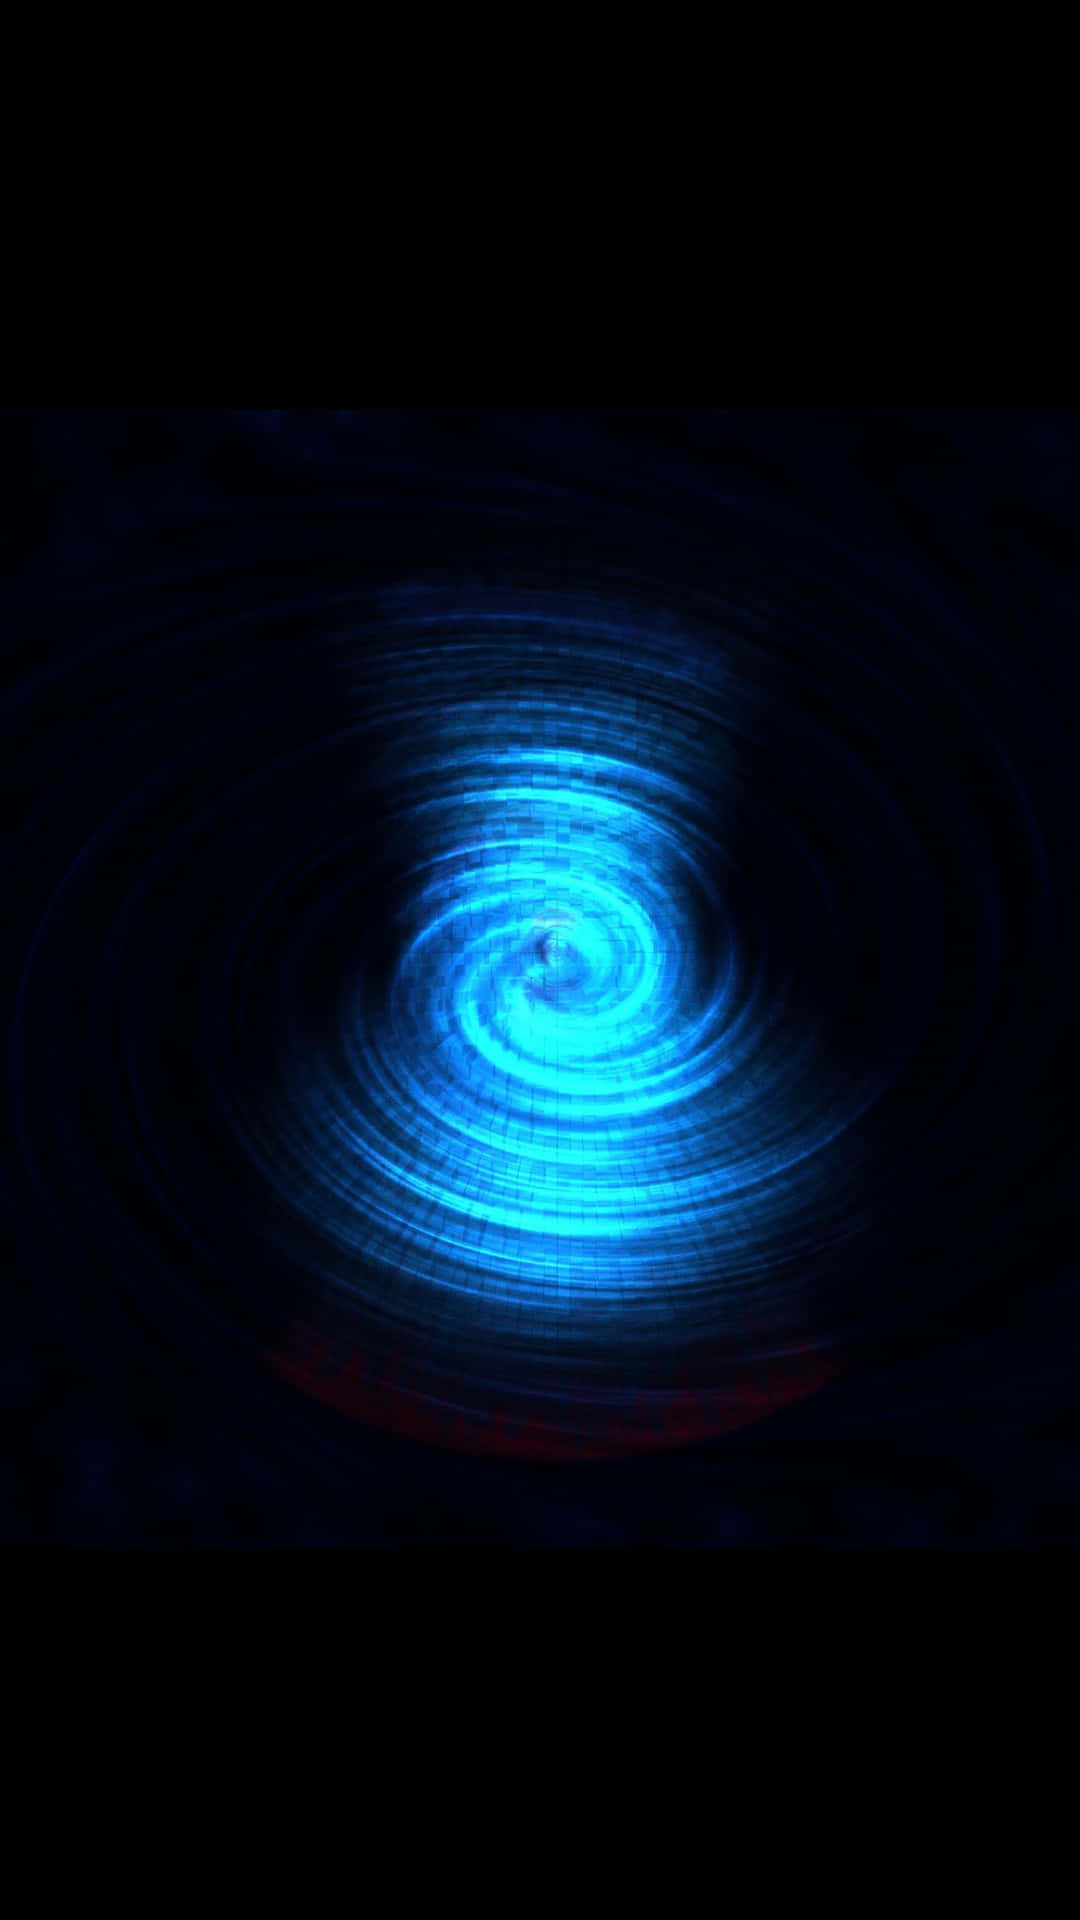 A Blue Spiral With A Blue Light